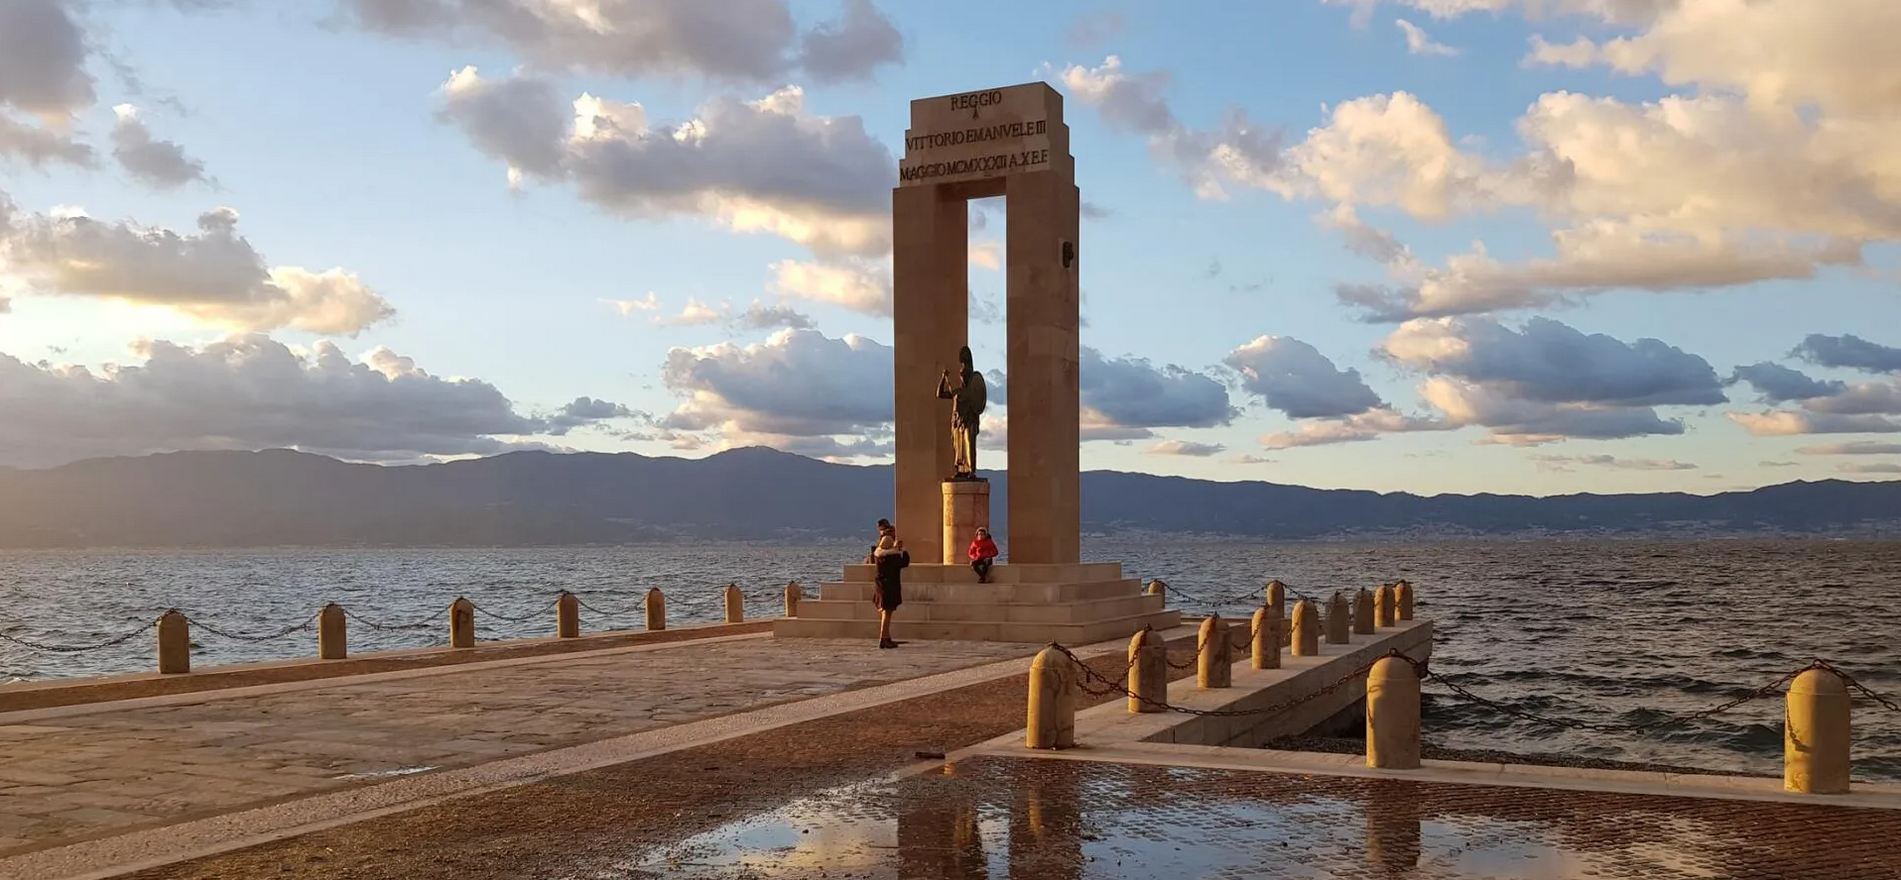 Monumento sul mare a Reggio Calabria